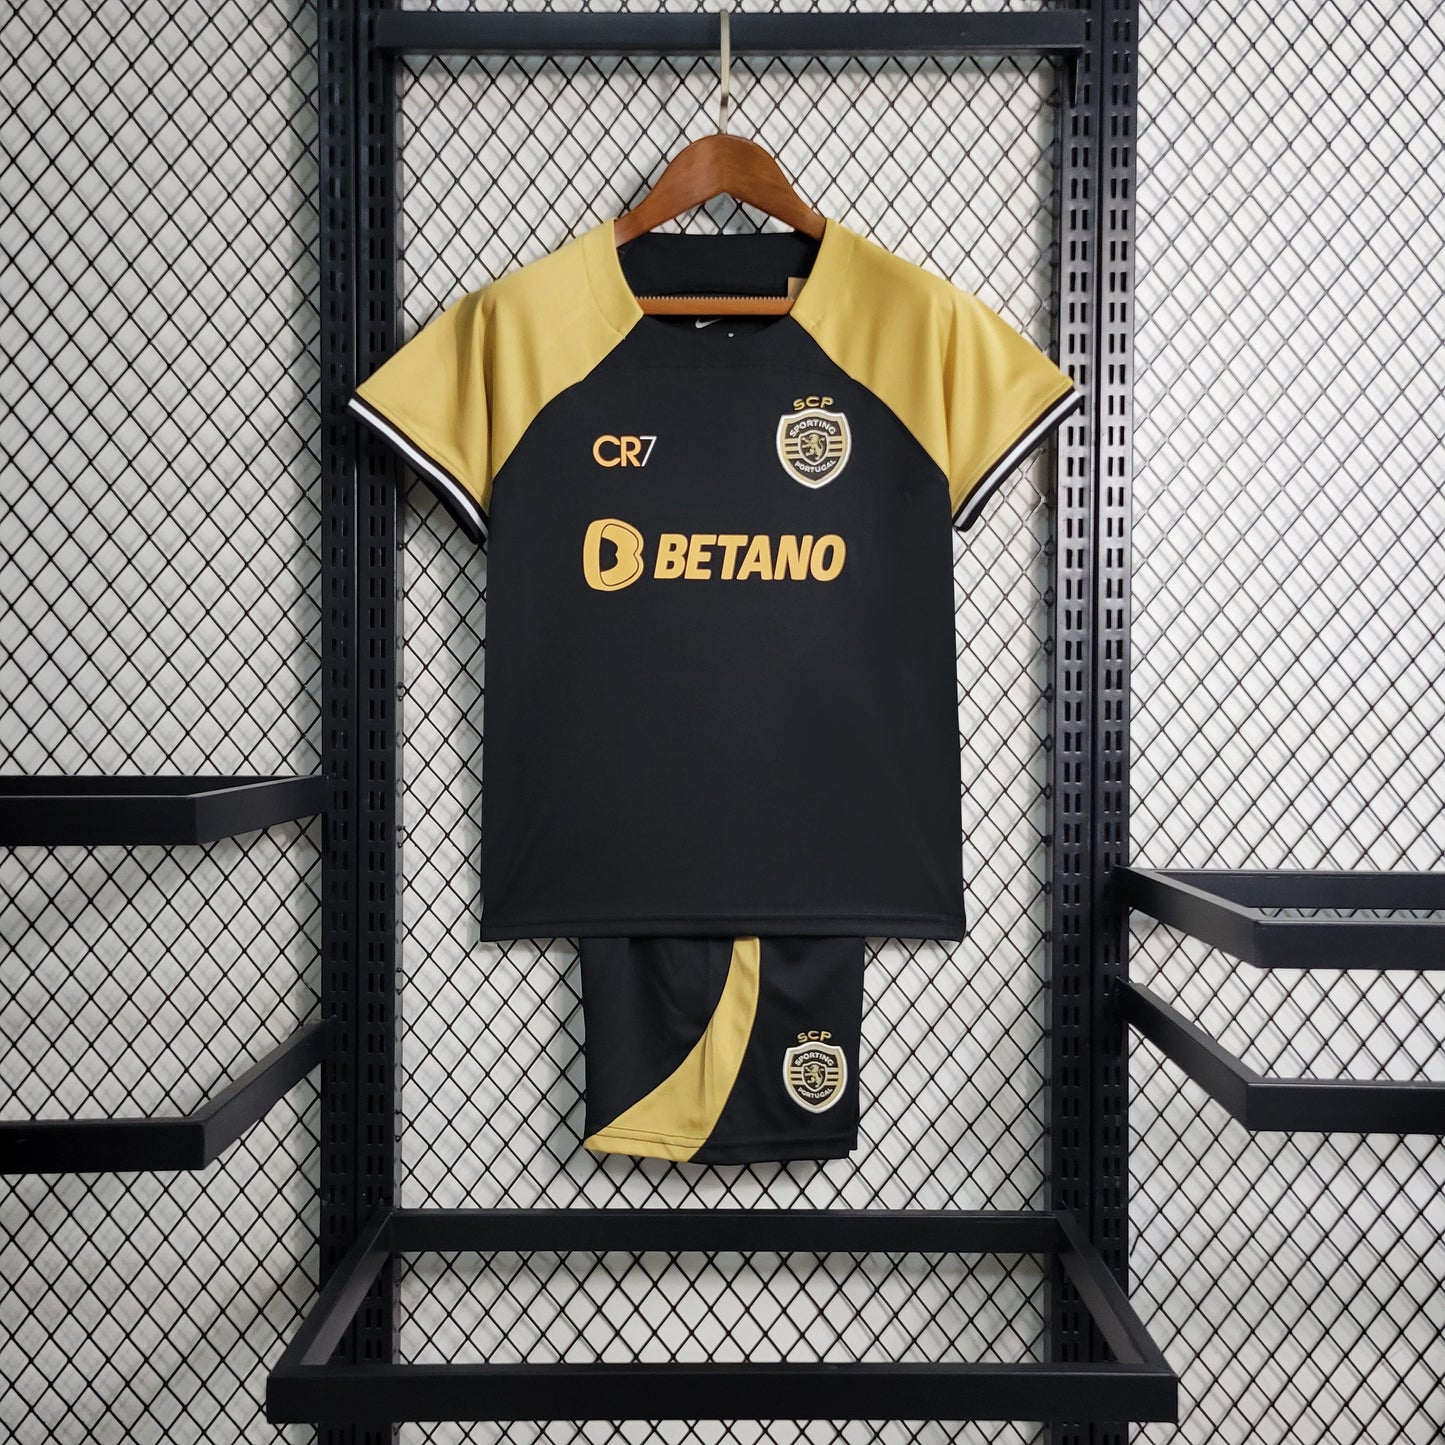 Camiseta CR7 x Sporting Lisboa| Edición conmemorativa